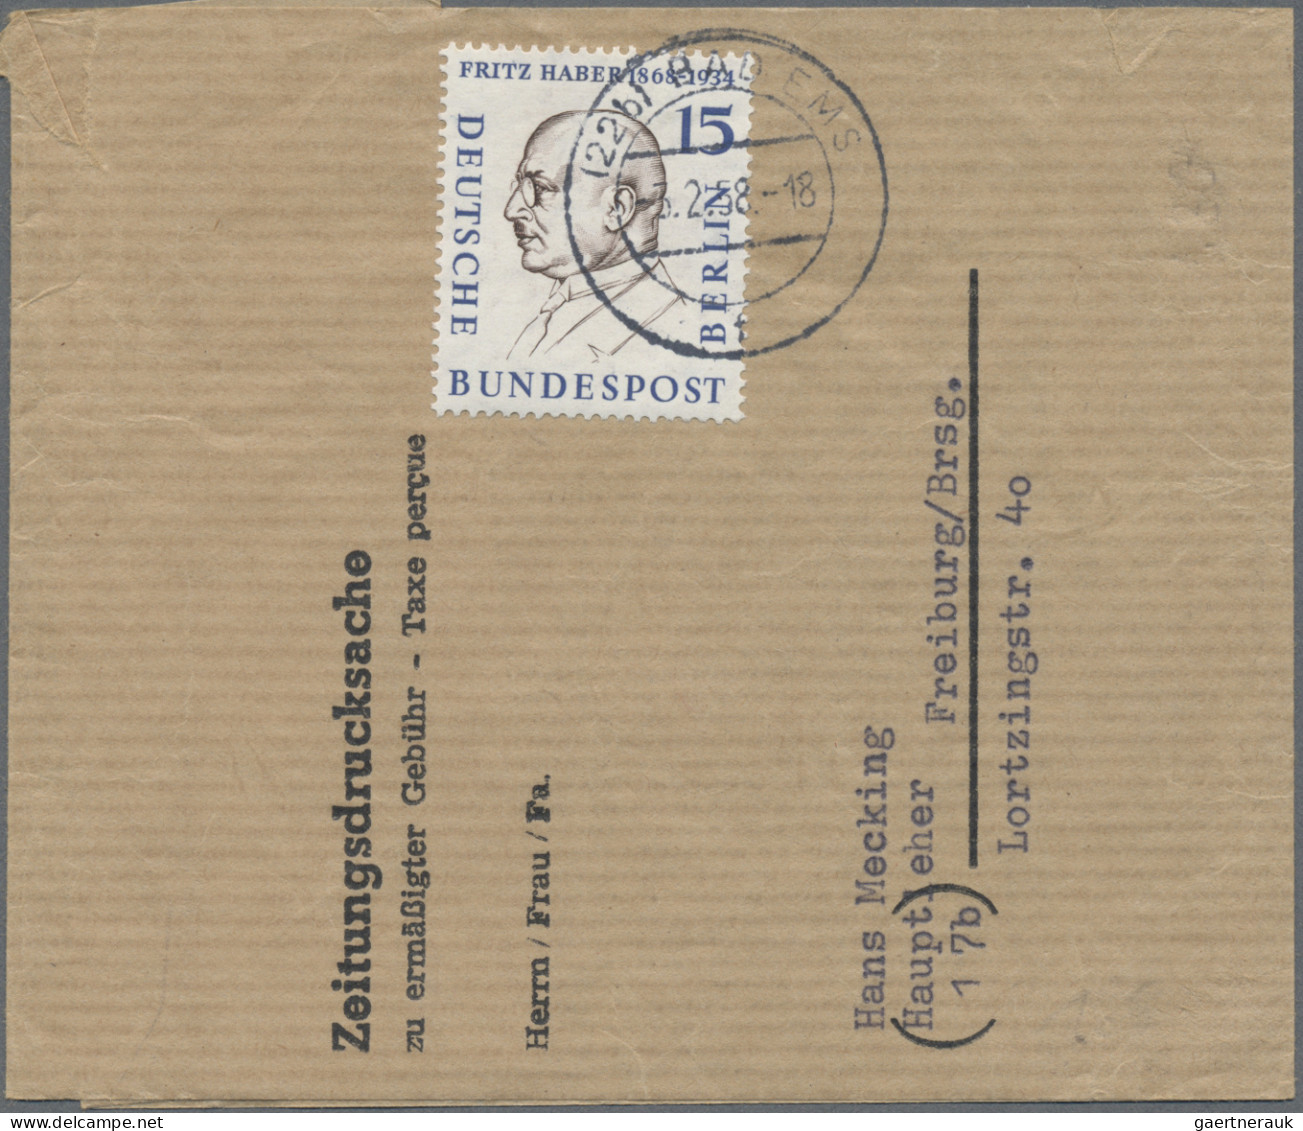 Berlin: 1952/1967, Partie von ca. 121 Bedarfs-Briefen und -Karten, alle mit auss